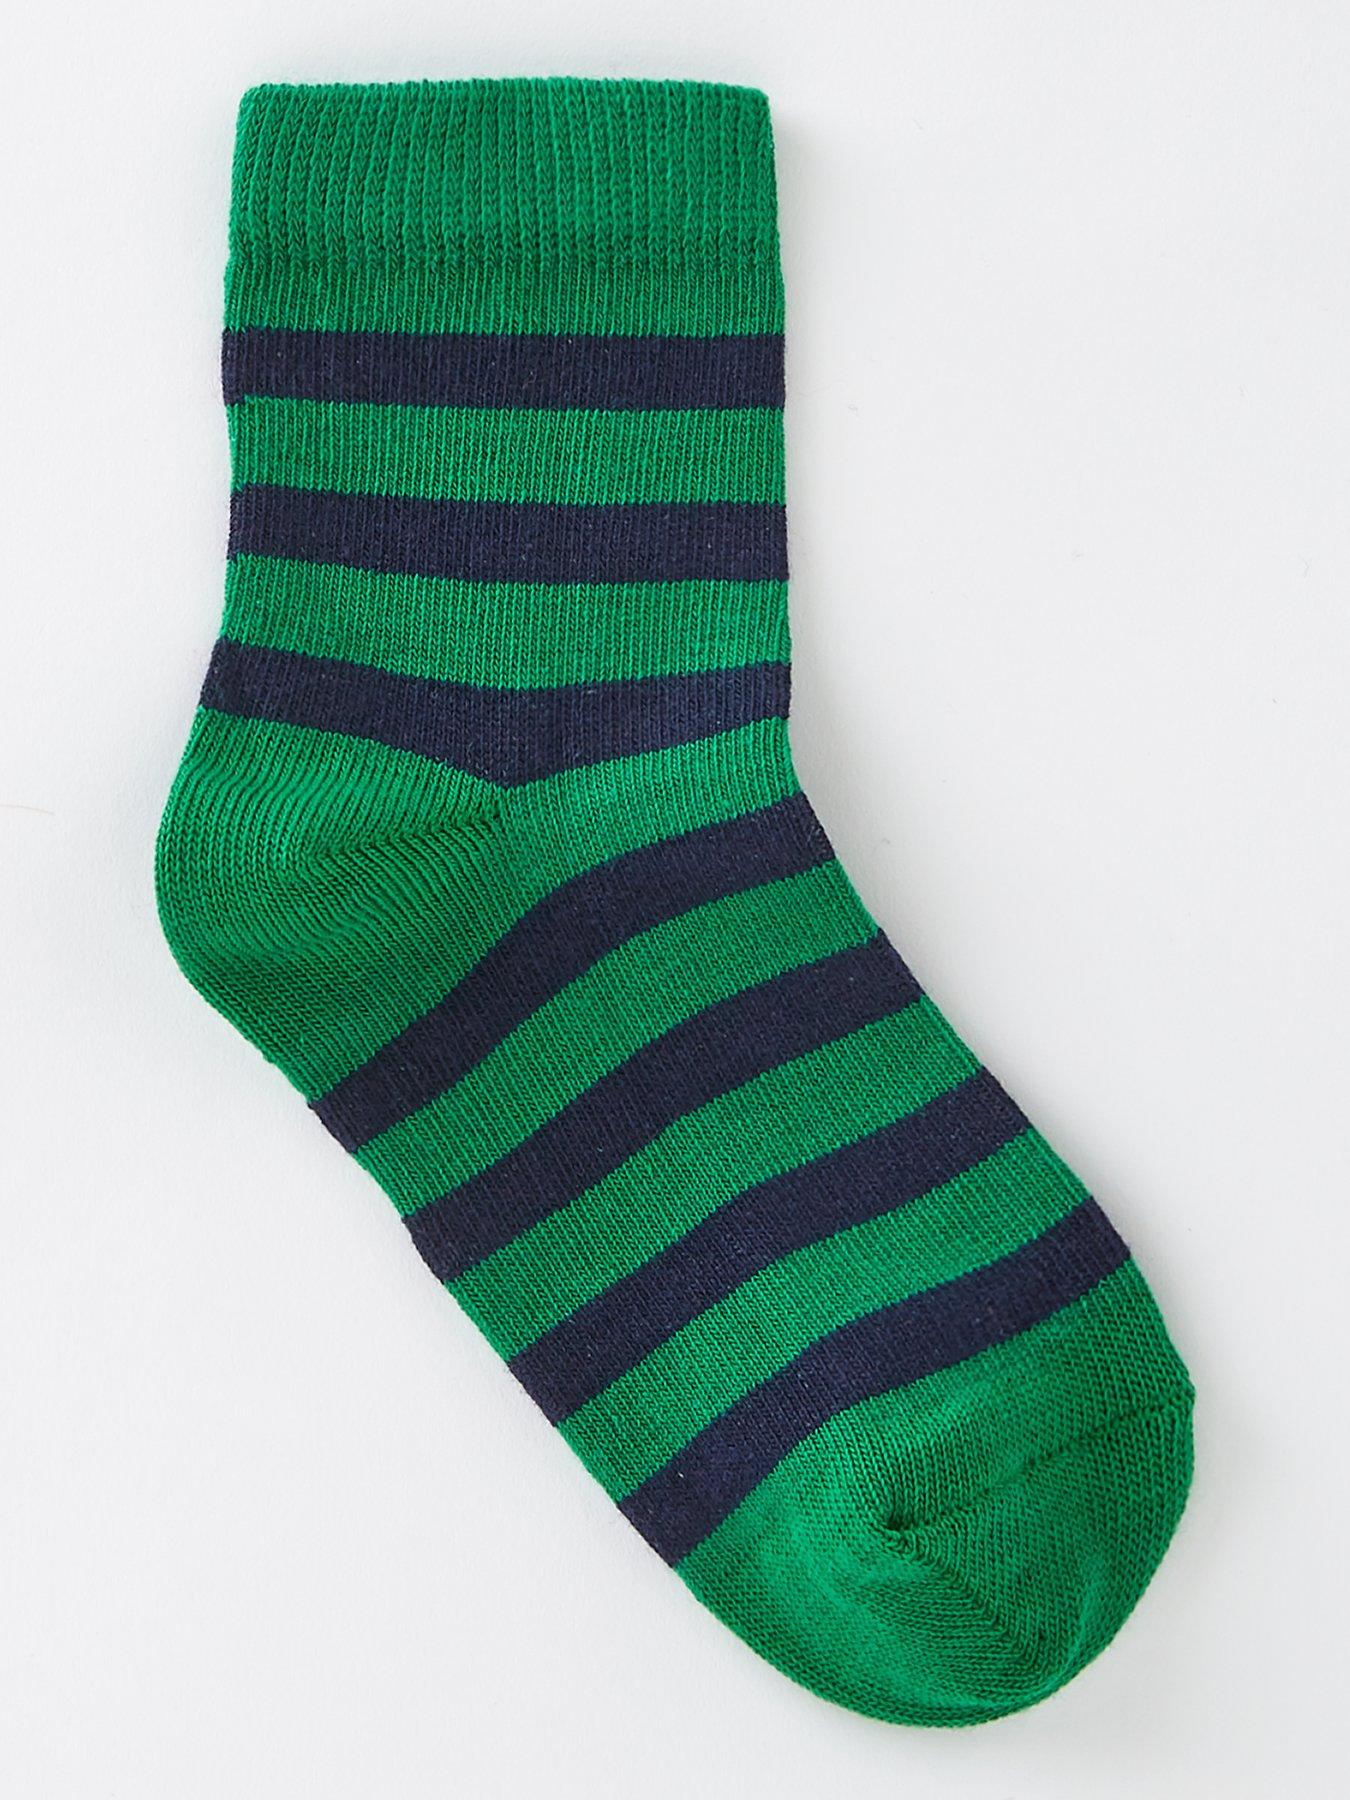 Men's Hunter Green and White Striped Socks